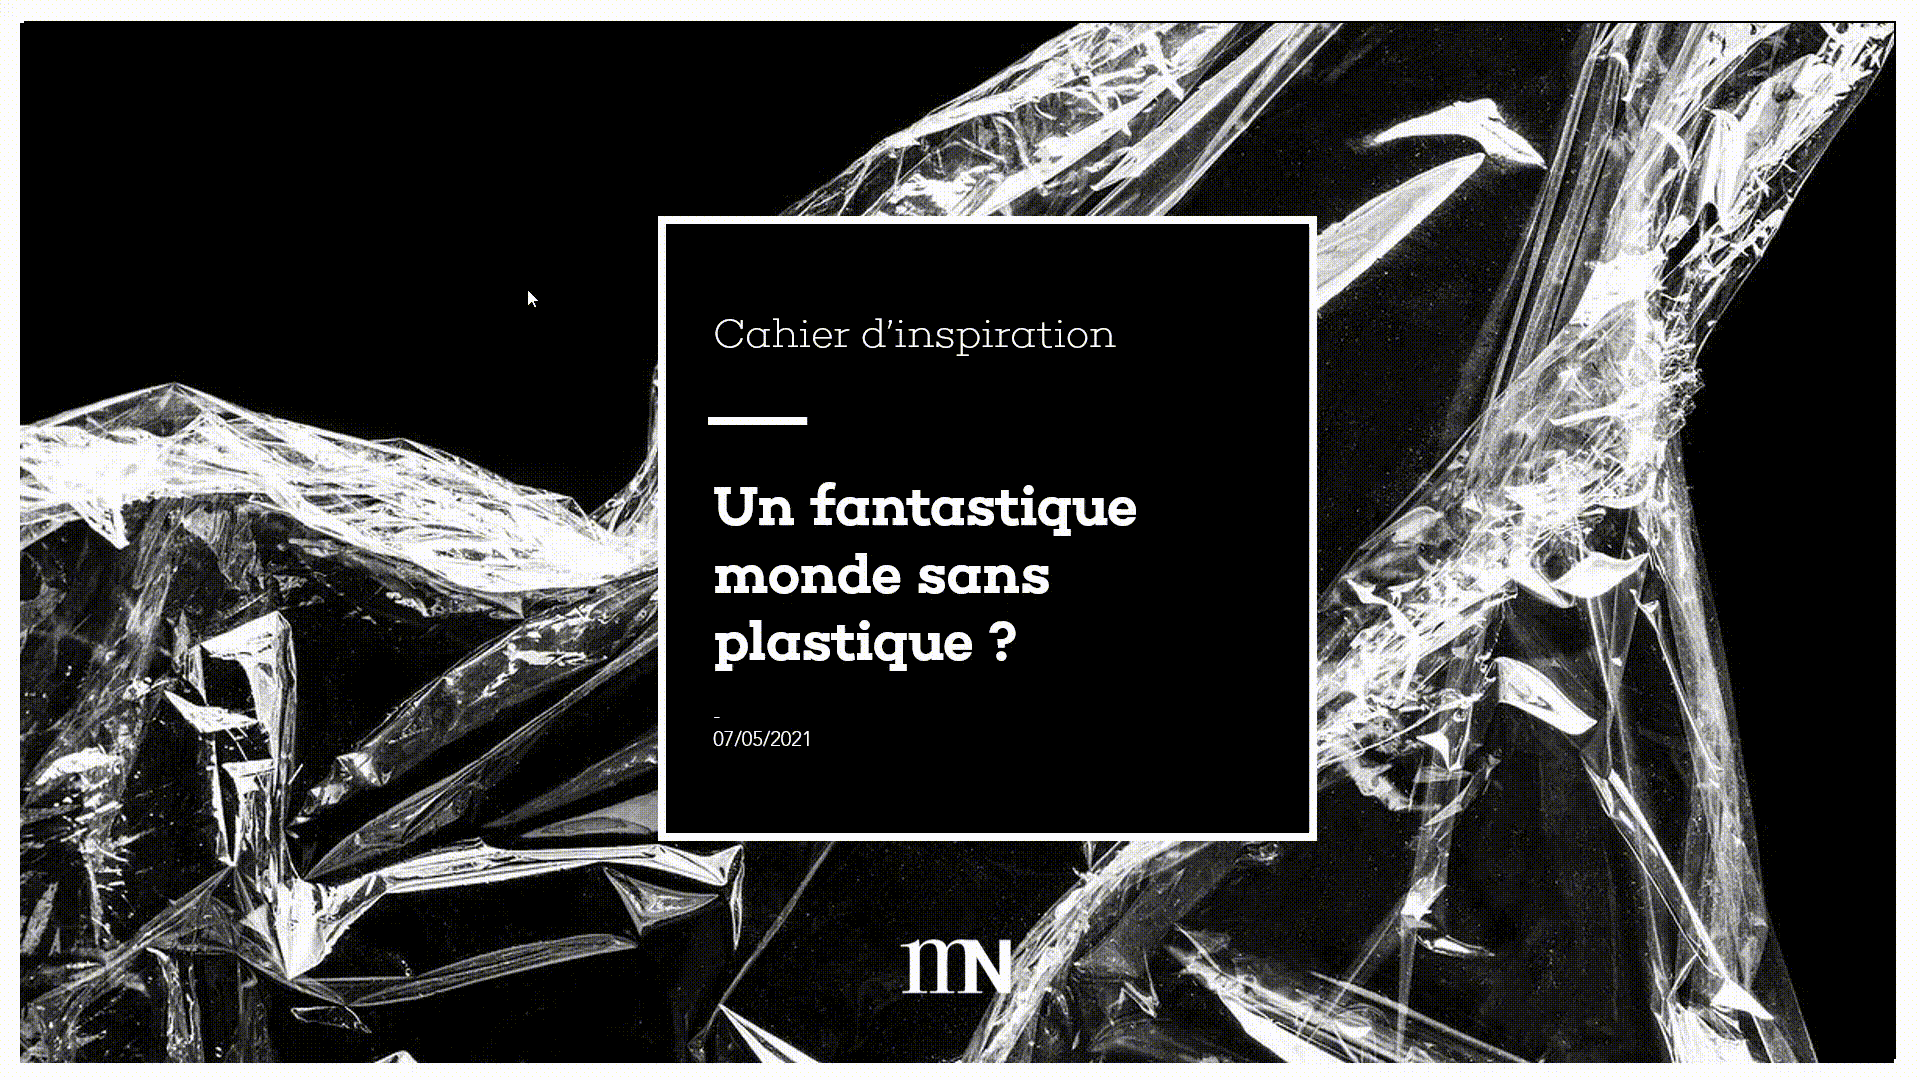 Diaporama-PowerPoint-PubliPlastique-2021-05-18-11-40-31